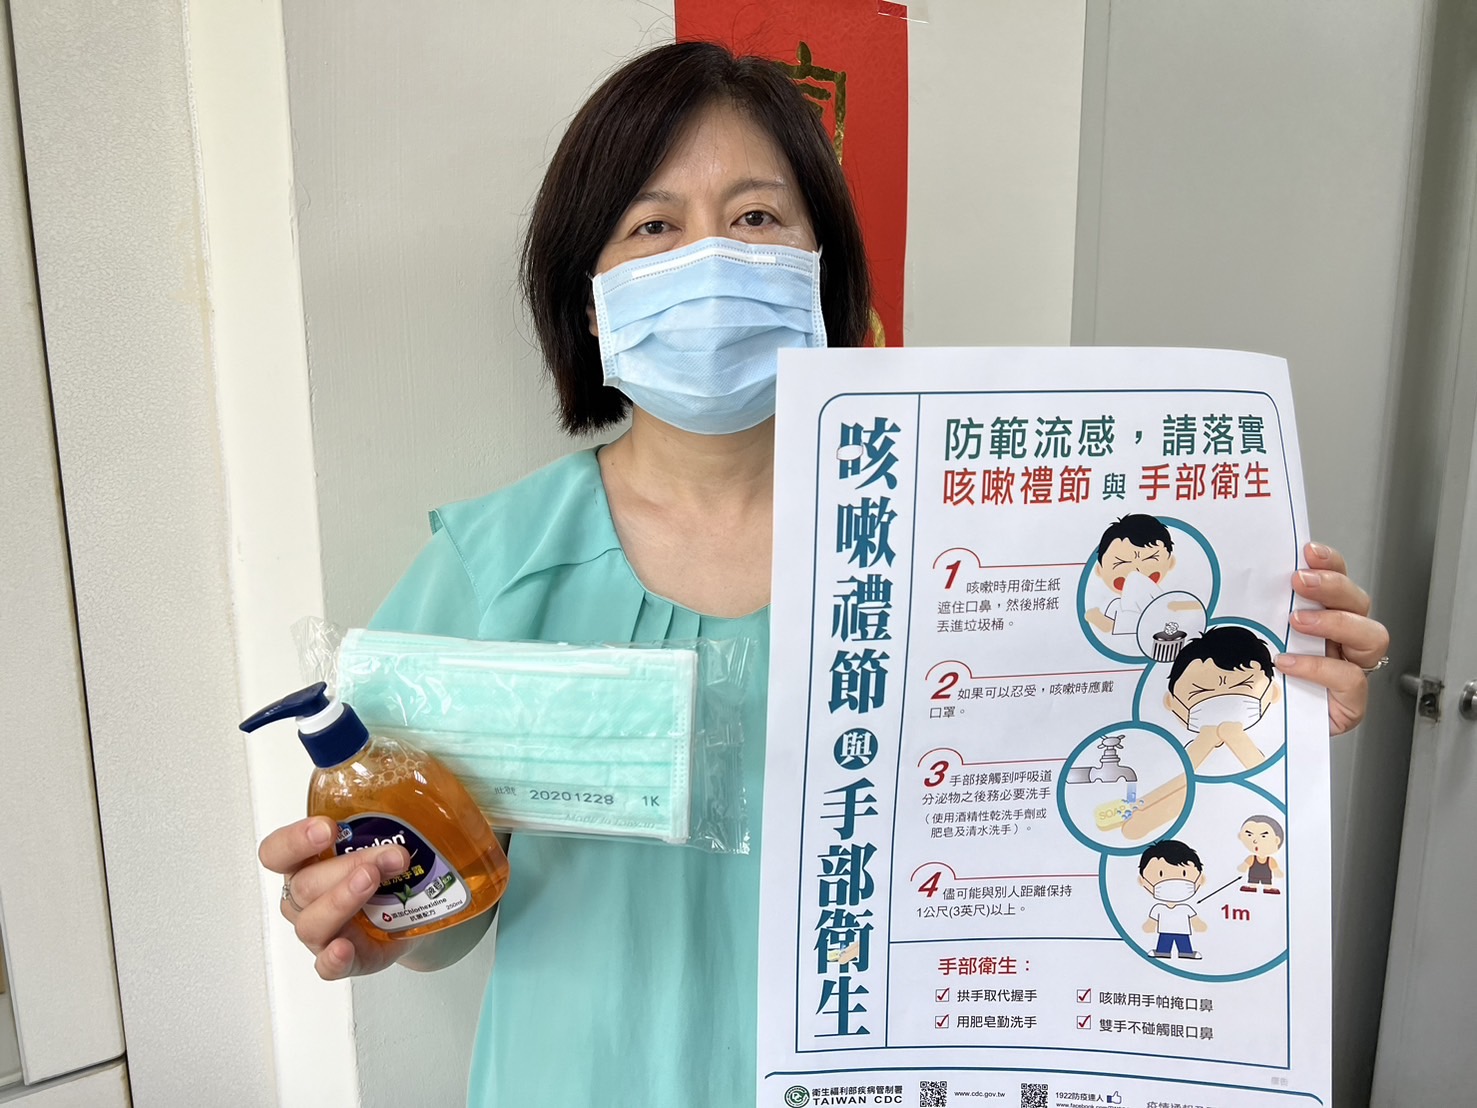 云林县卫生局呼吁民众应勤洗手，出入公众场合也须做好呼吸道保护工作。记者陈雅玲／摄影